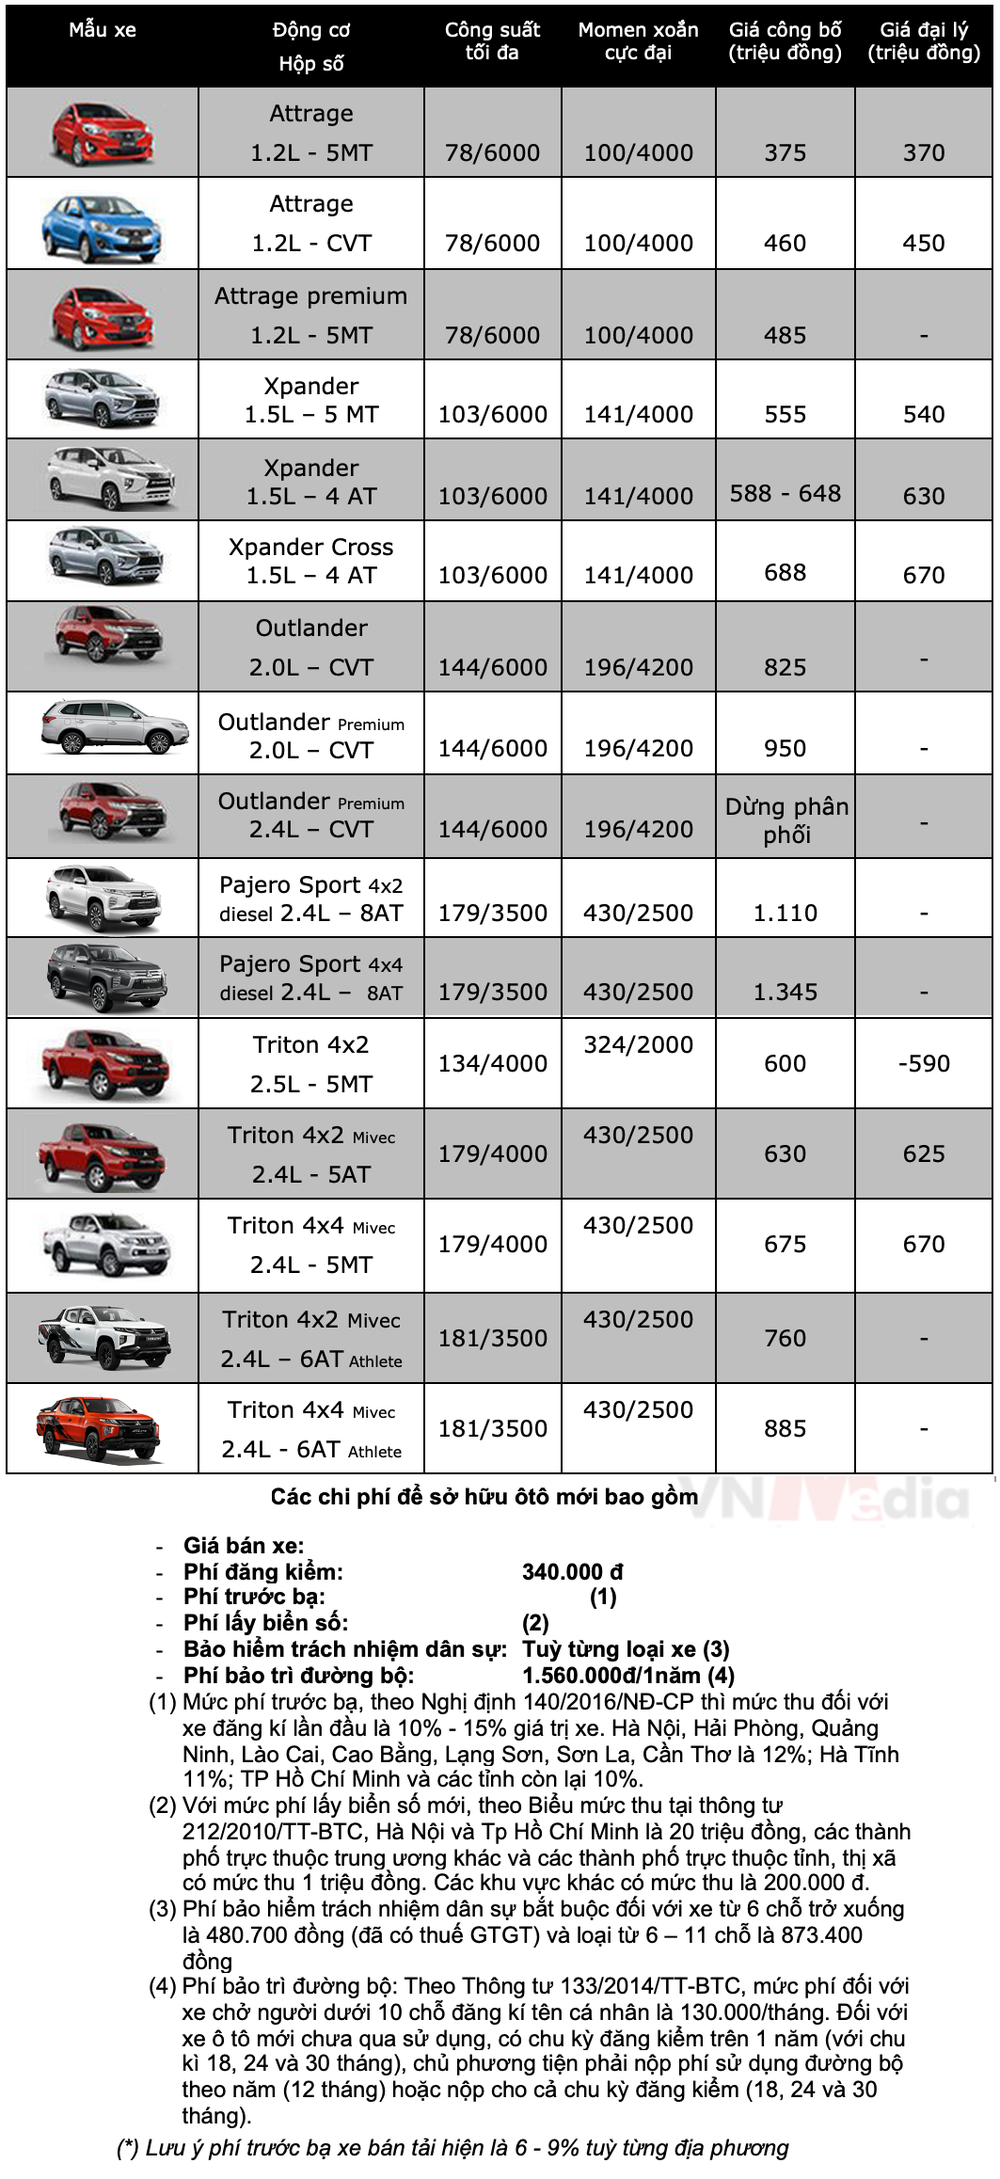 Bảng giá xe Mitsubishi tháng 5: Mitsubishi Outlander được ưu đãi gần 70 triệu đồng - Ảnh 2.